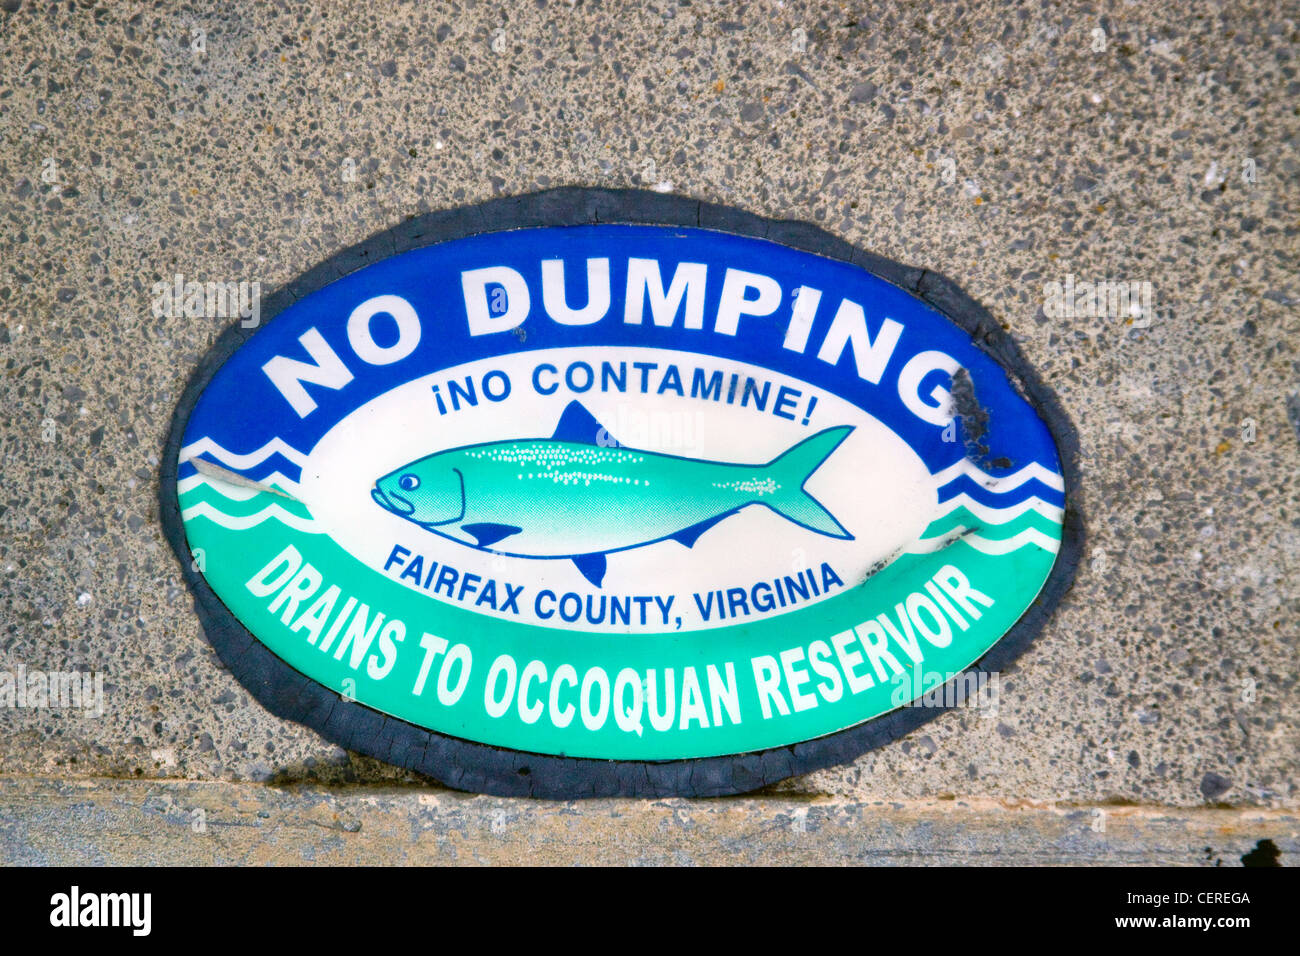 Fairfax County Virginia kein Dumping entwässert, Occoquan Reservor Schild oben ein Sturm Wasser Entwässerung Auffangbecken Einlaufbauwerk Stockfoto